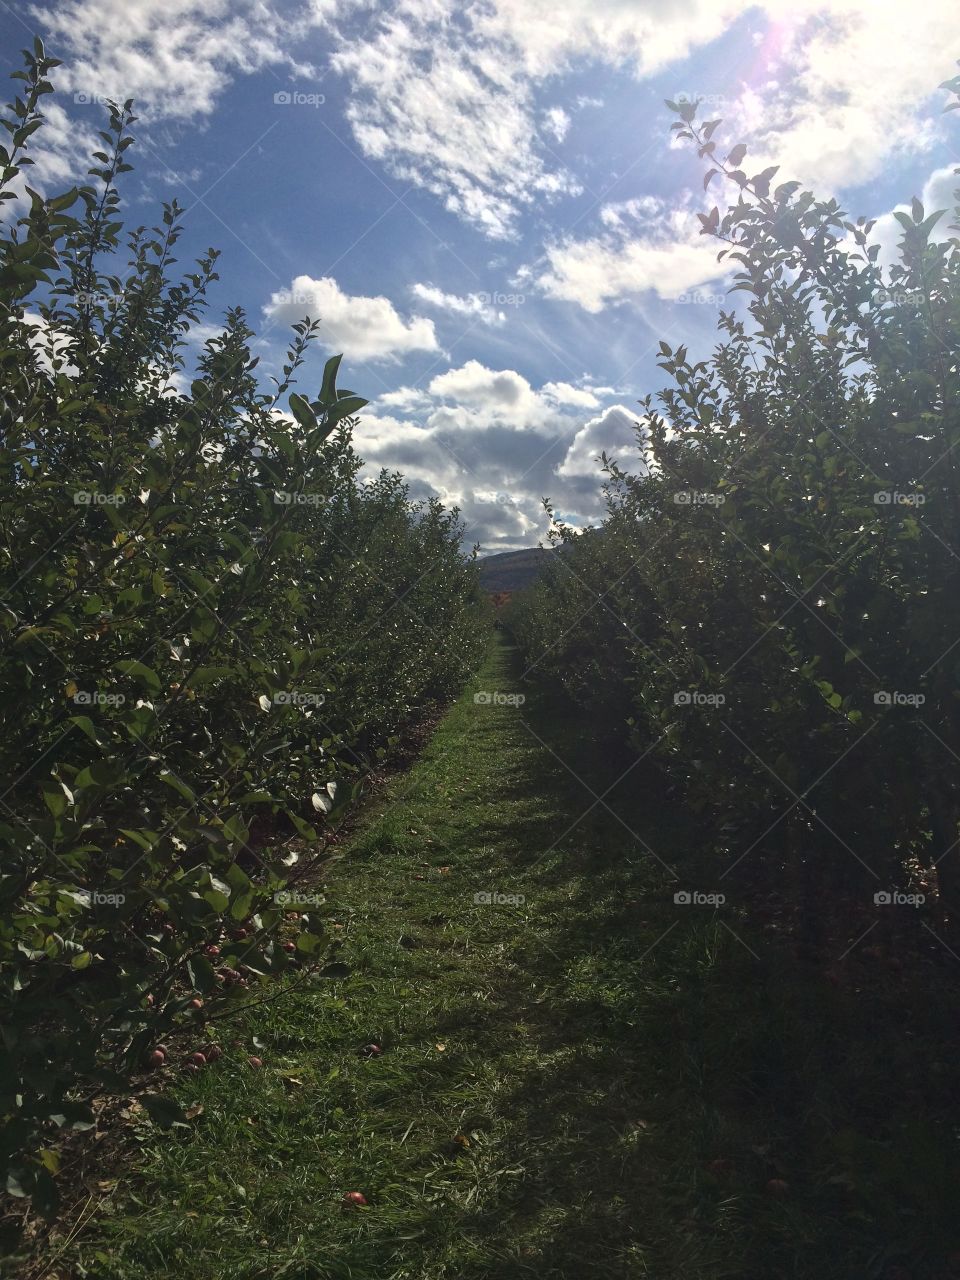 Fields of Apple Trees